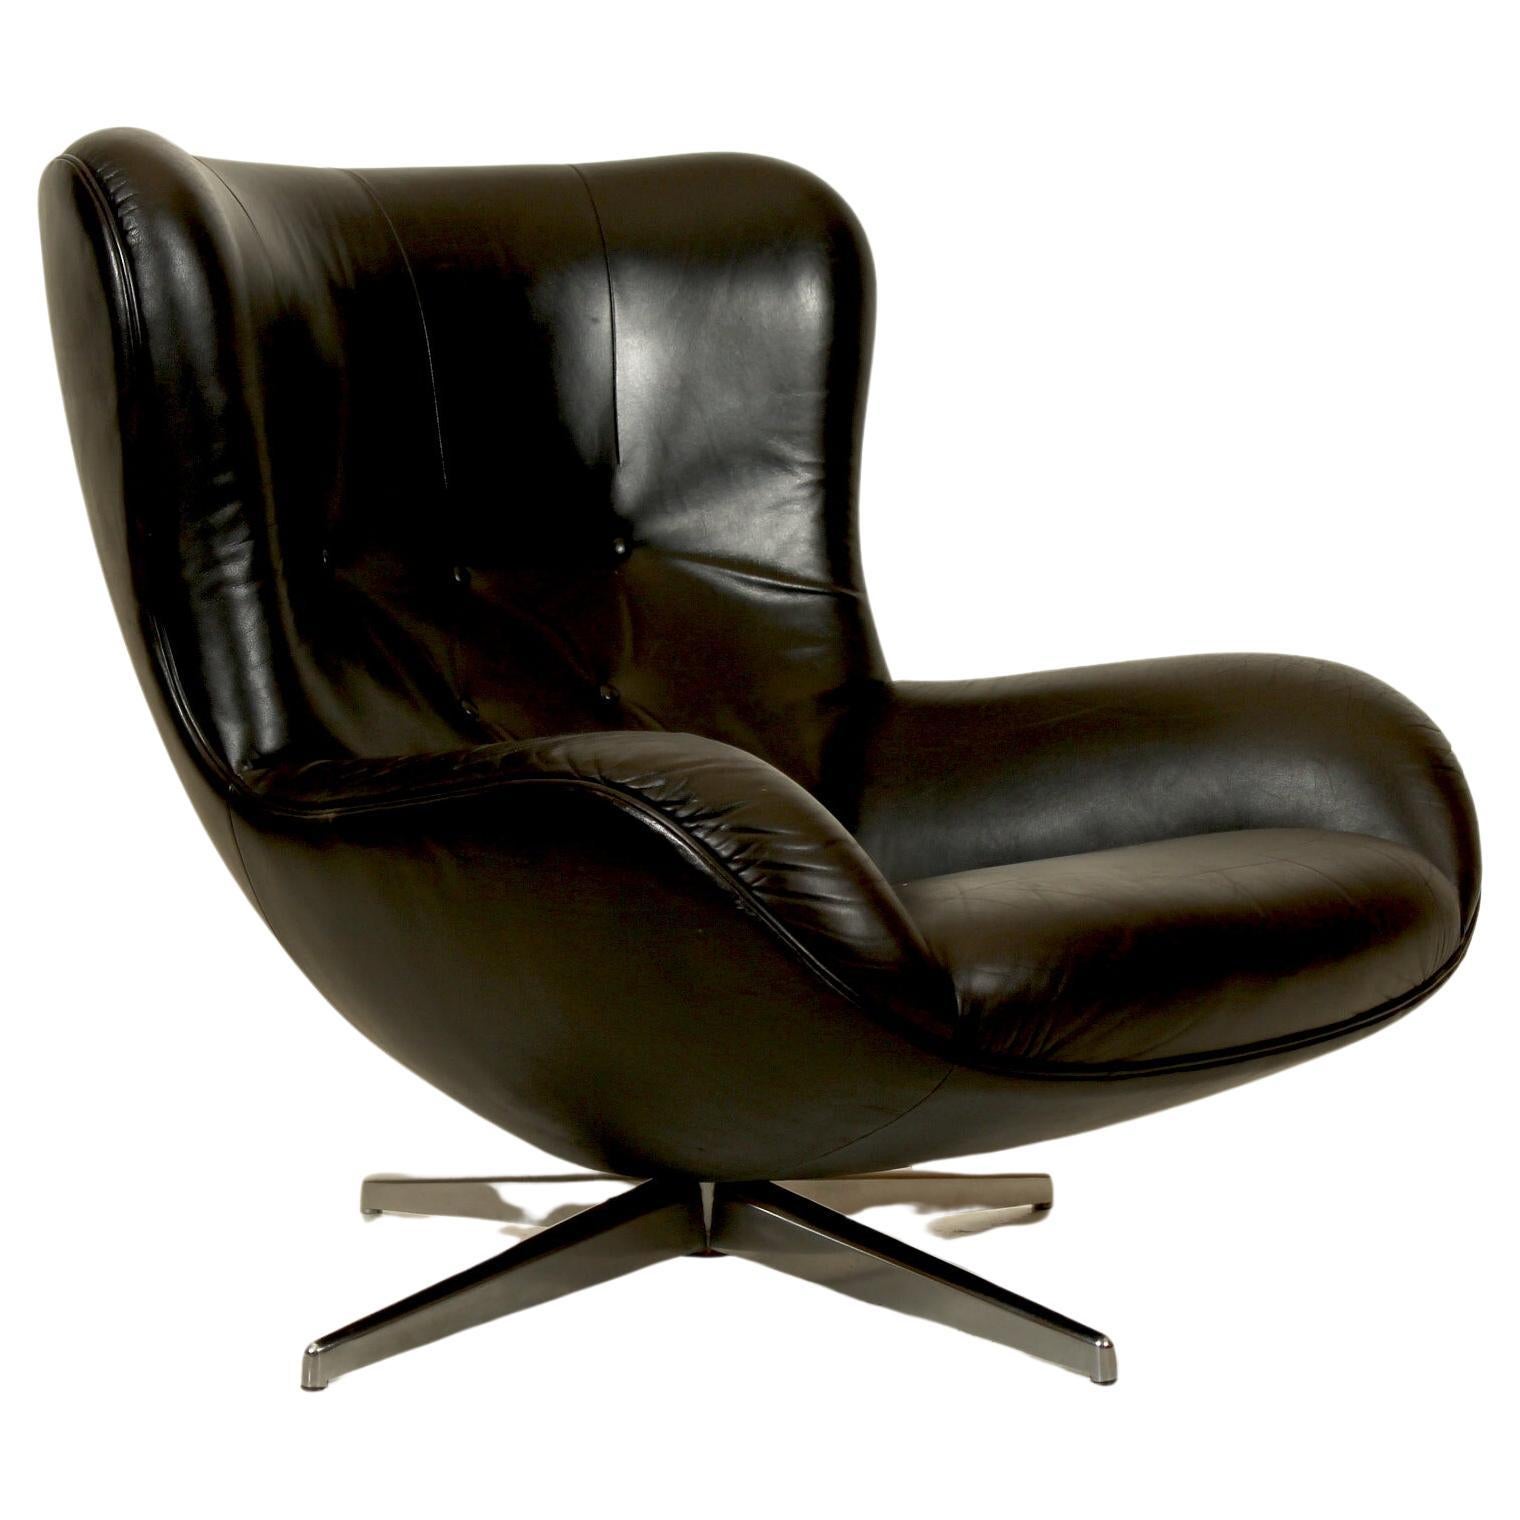 Danish modern, Illum Wikkelsø for Mikael Laursen Swivel 'ML214' Lounge Chair For Sale